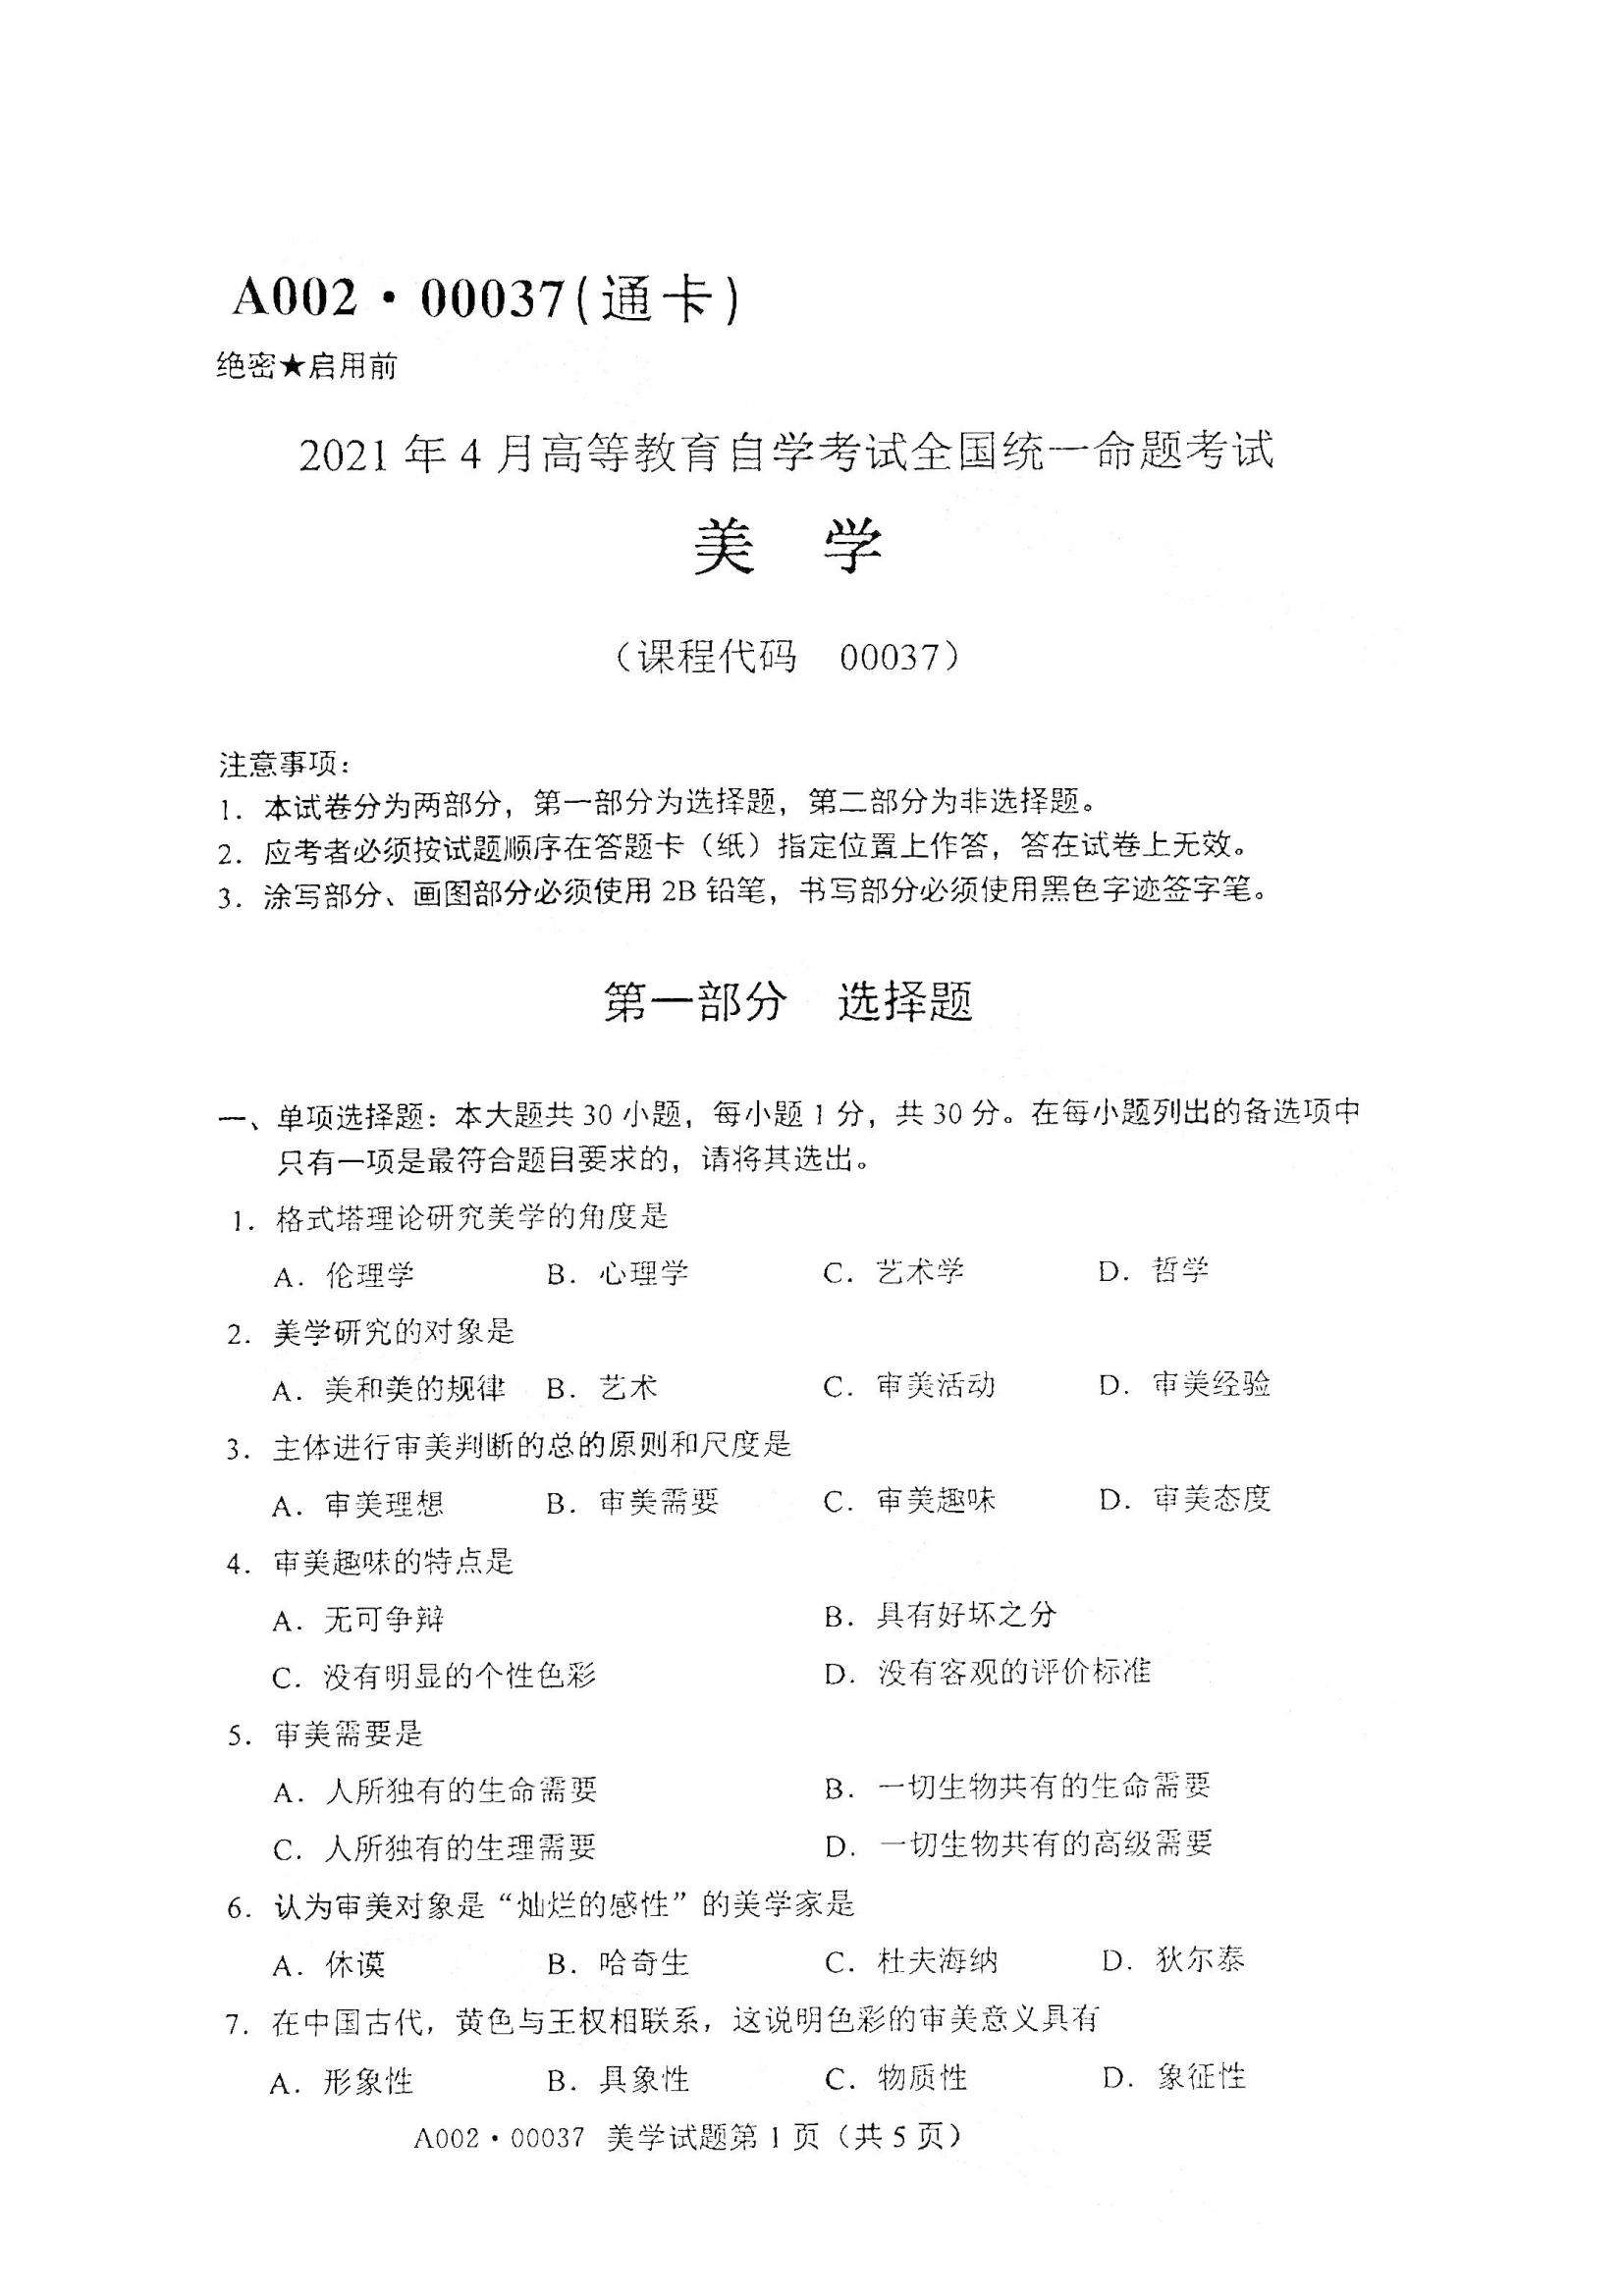 【江西省自考材料】江西省自学考试指导手册pdf怎么样？